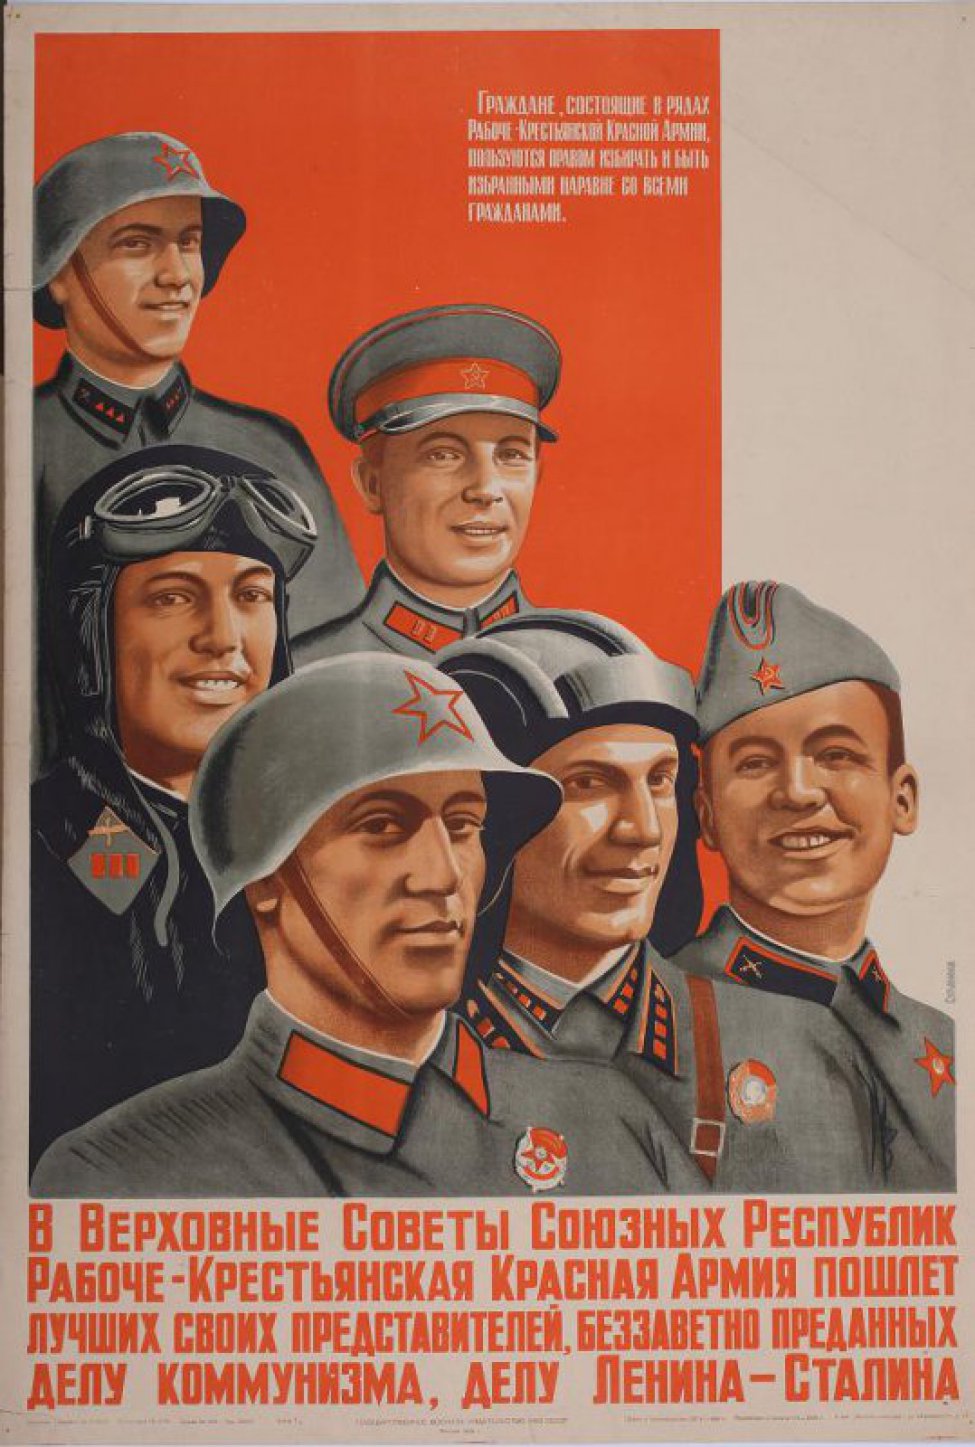 Изображены  летчик, красноармеец и командир. Внизу текст: " В Верховные... Сталина".